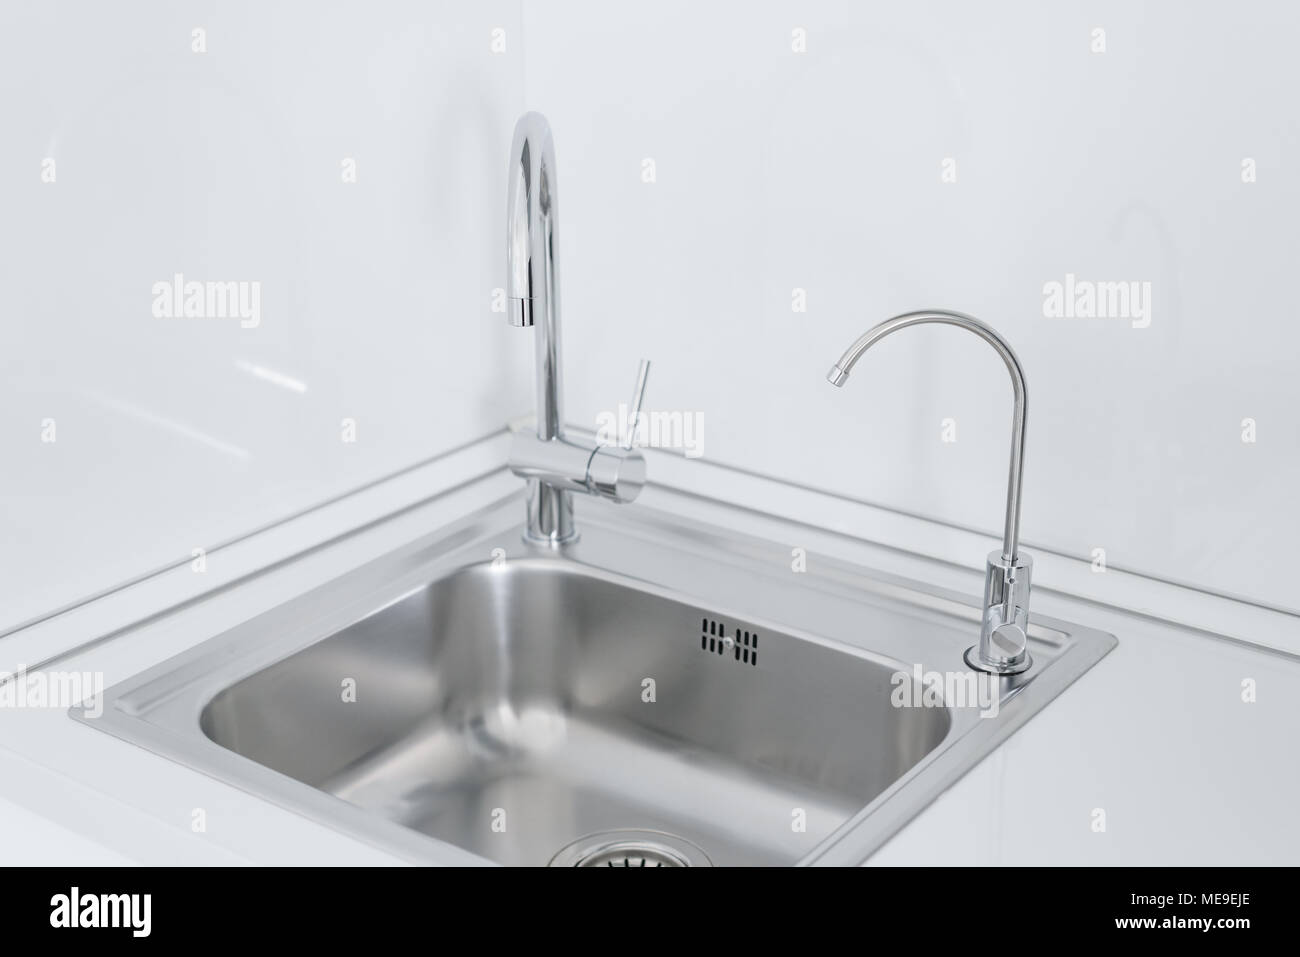 Metall chrom Waschbecken mit zwei Hähnen, schlicht und gefiltertes Wasser.  Fragment der modernen Küche mit Theke und einem Waschbecken. Detail des  Inneren Stockfotografie - Alamy